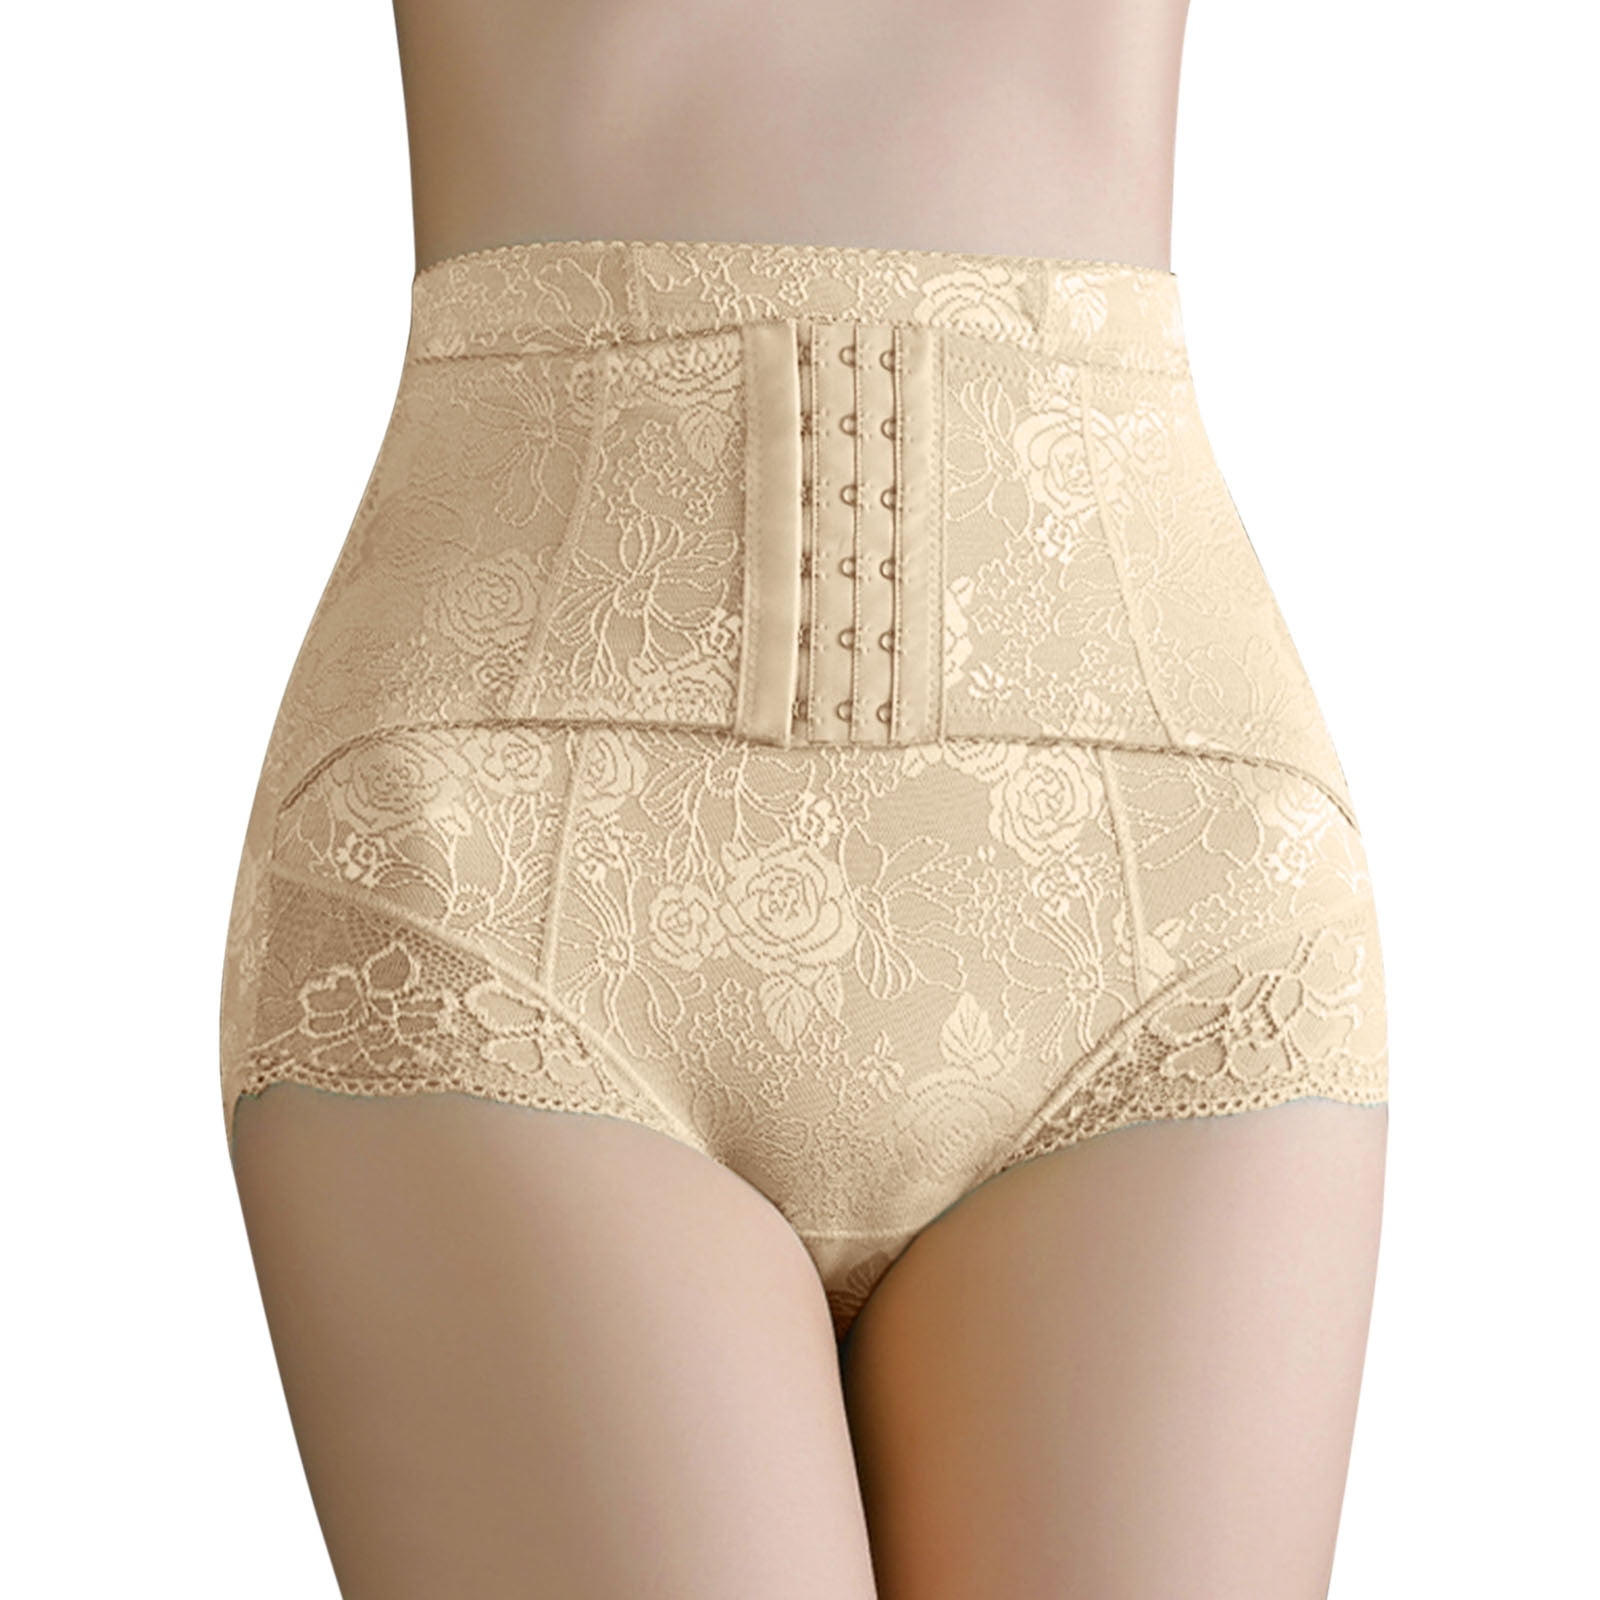 ZMHEGW Womens Underwear Seamless Tummy Control Body Shaper High